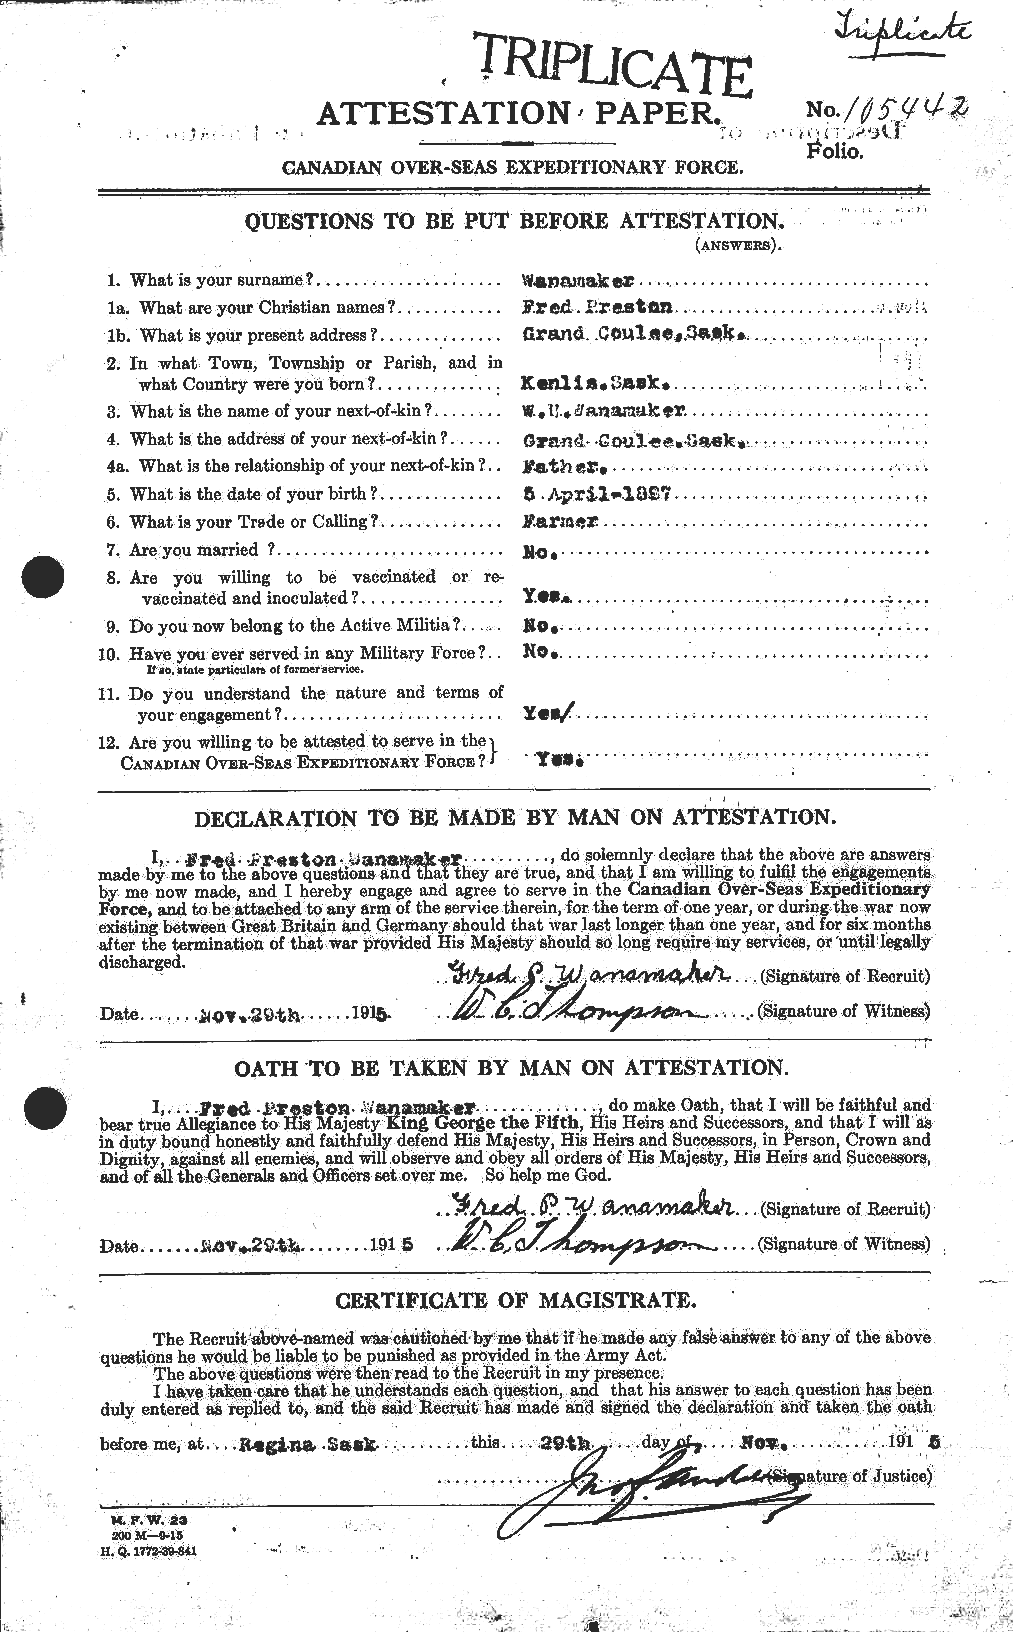 Dossiers du Personnel de la Première Guerre mondiale - CEC 654906a